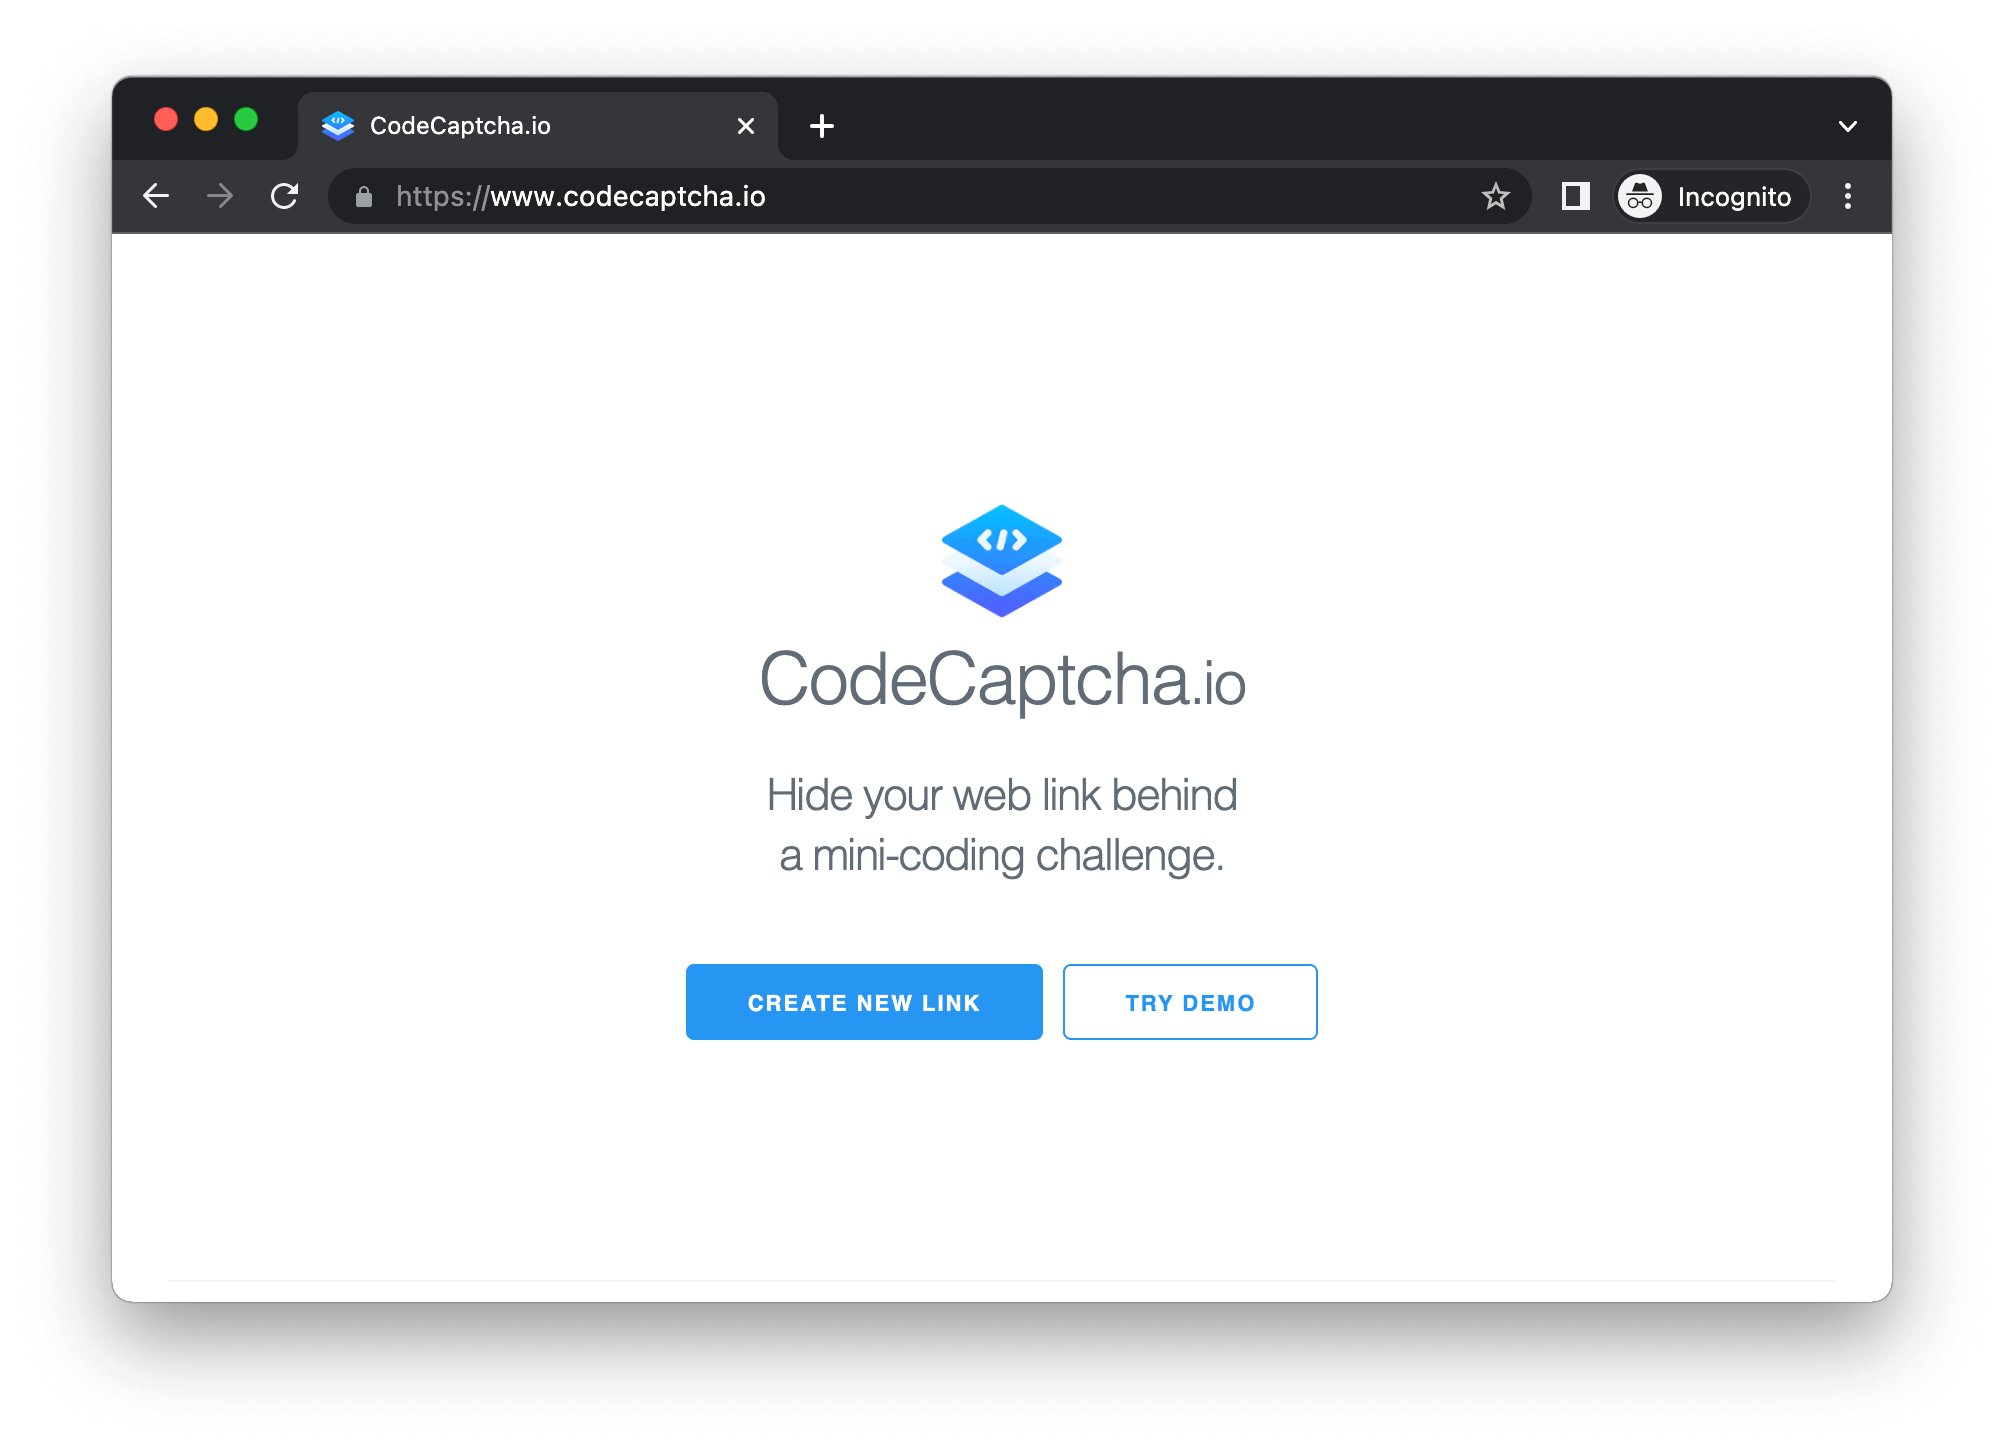 CodeCaptcha.io